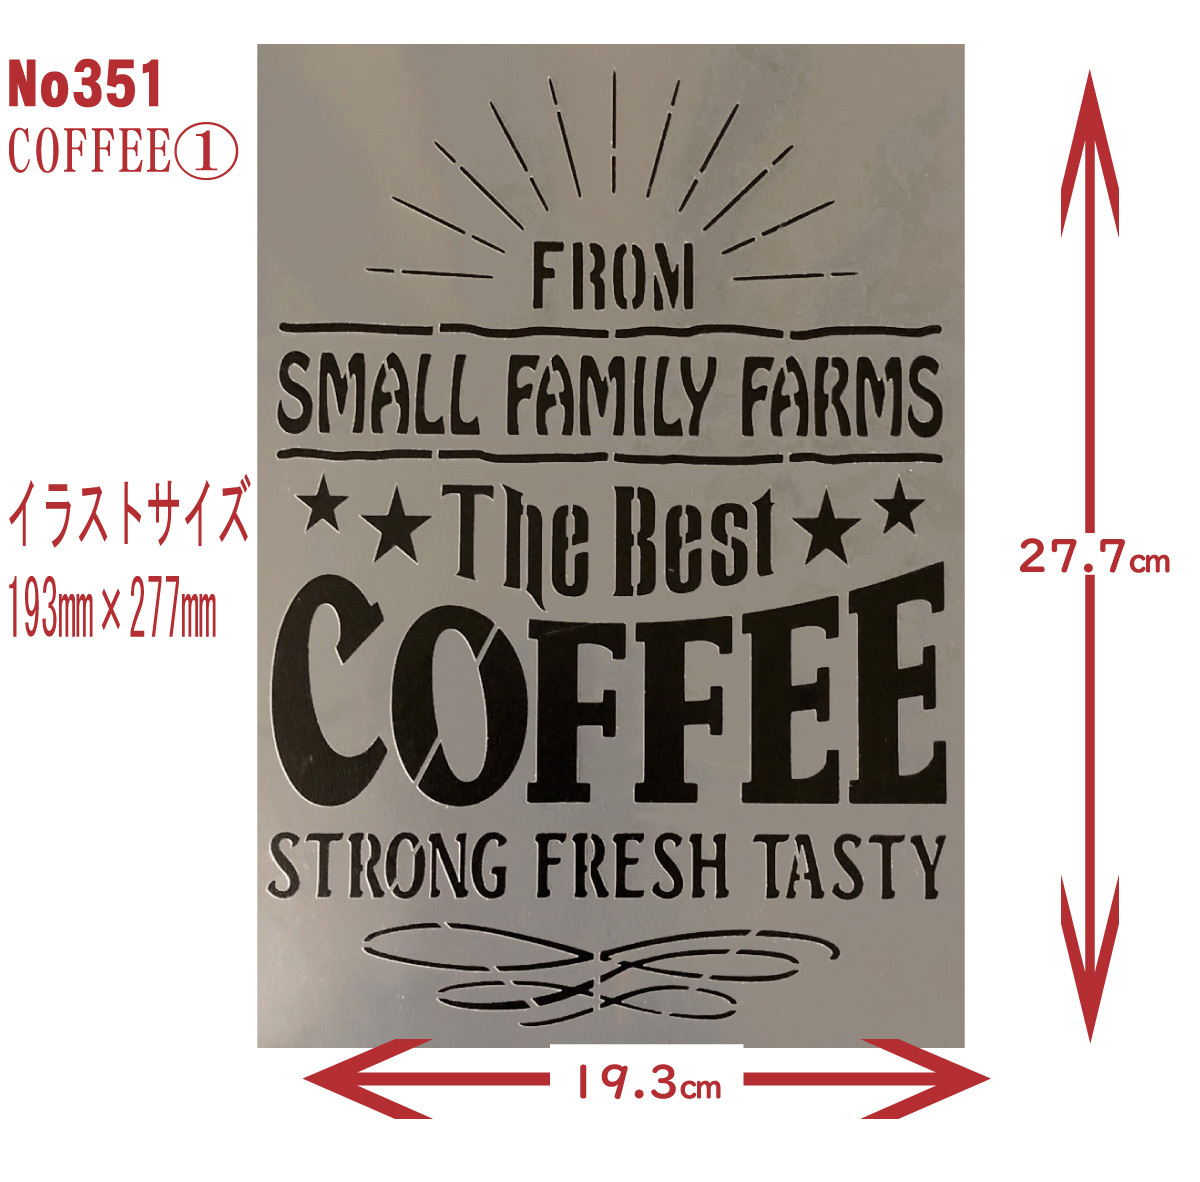 *CAFE способ дизайн 1 номер [The Best COFFEE] CAFE STYLE Design stencil сиденье выкройки дизайн No351